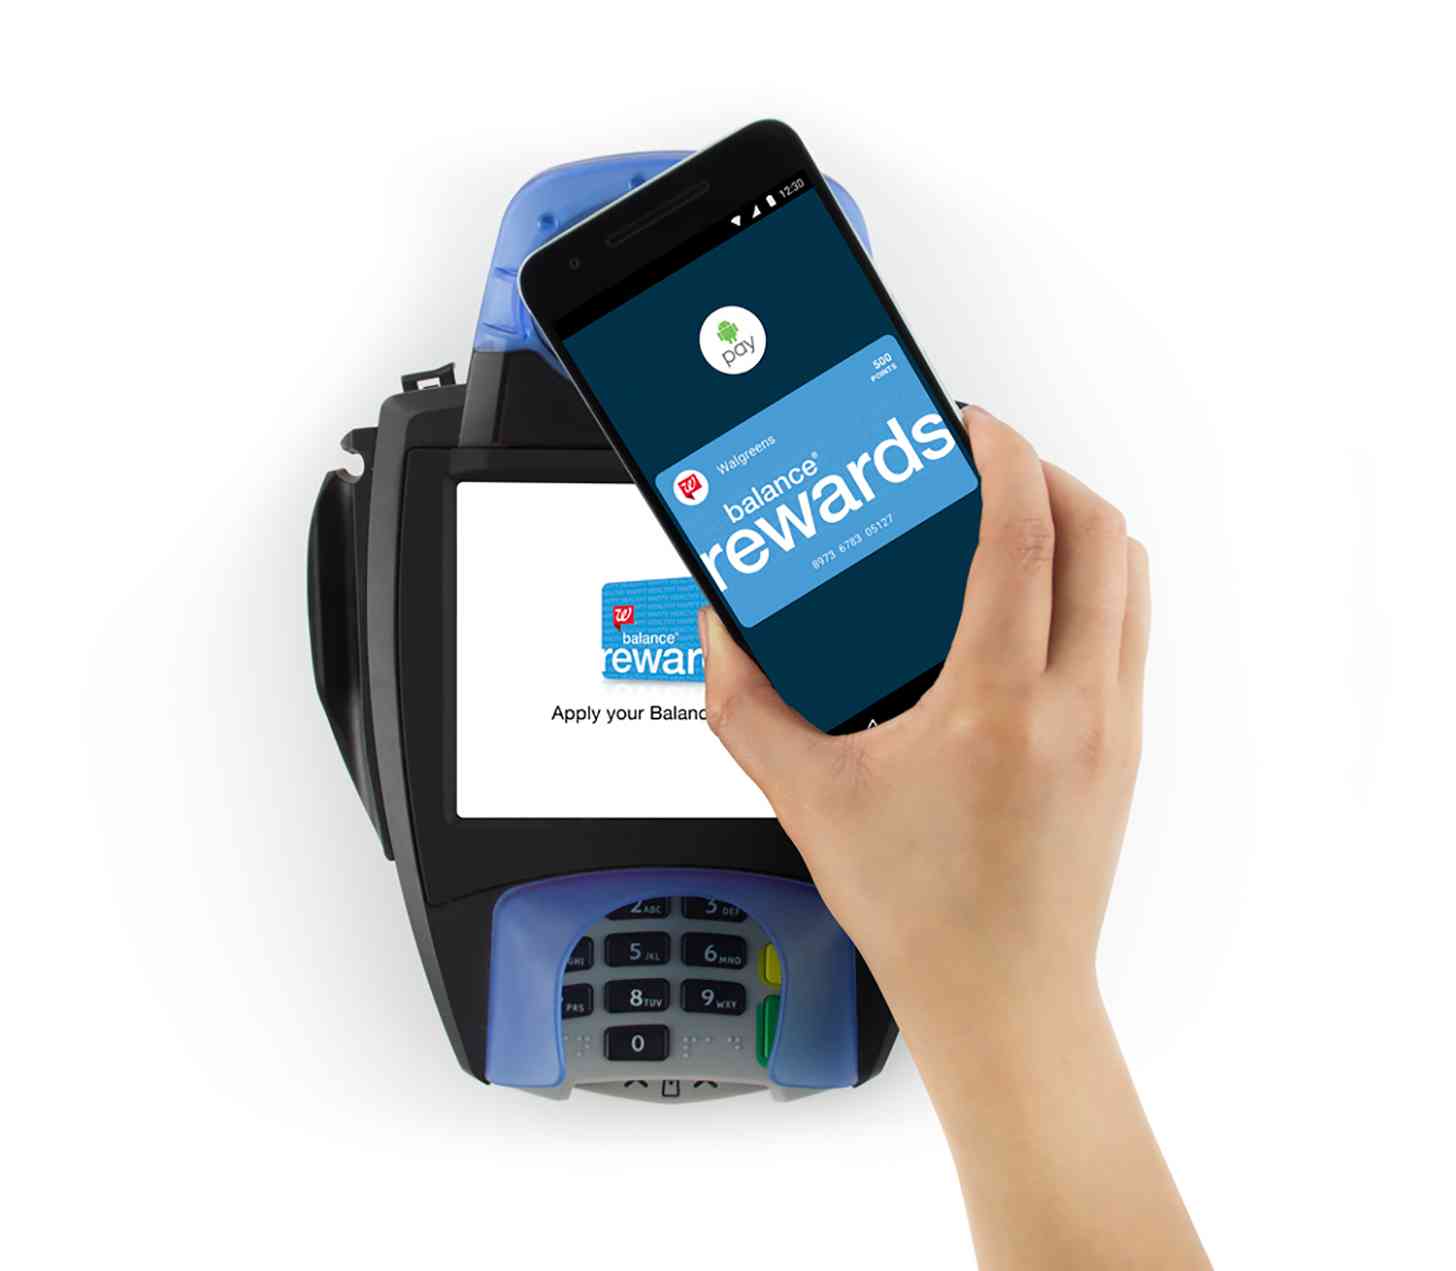 Walgreens Android Pay Balance Rewards loyalty program